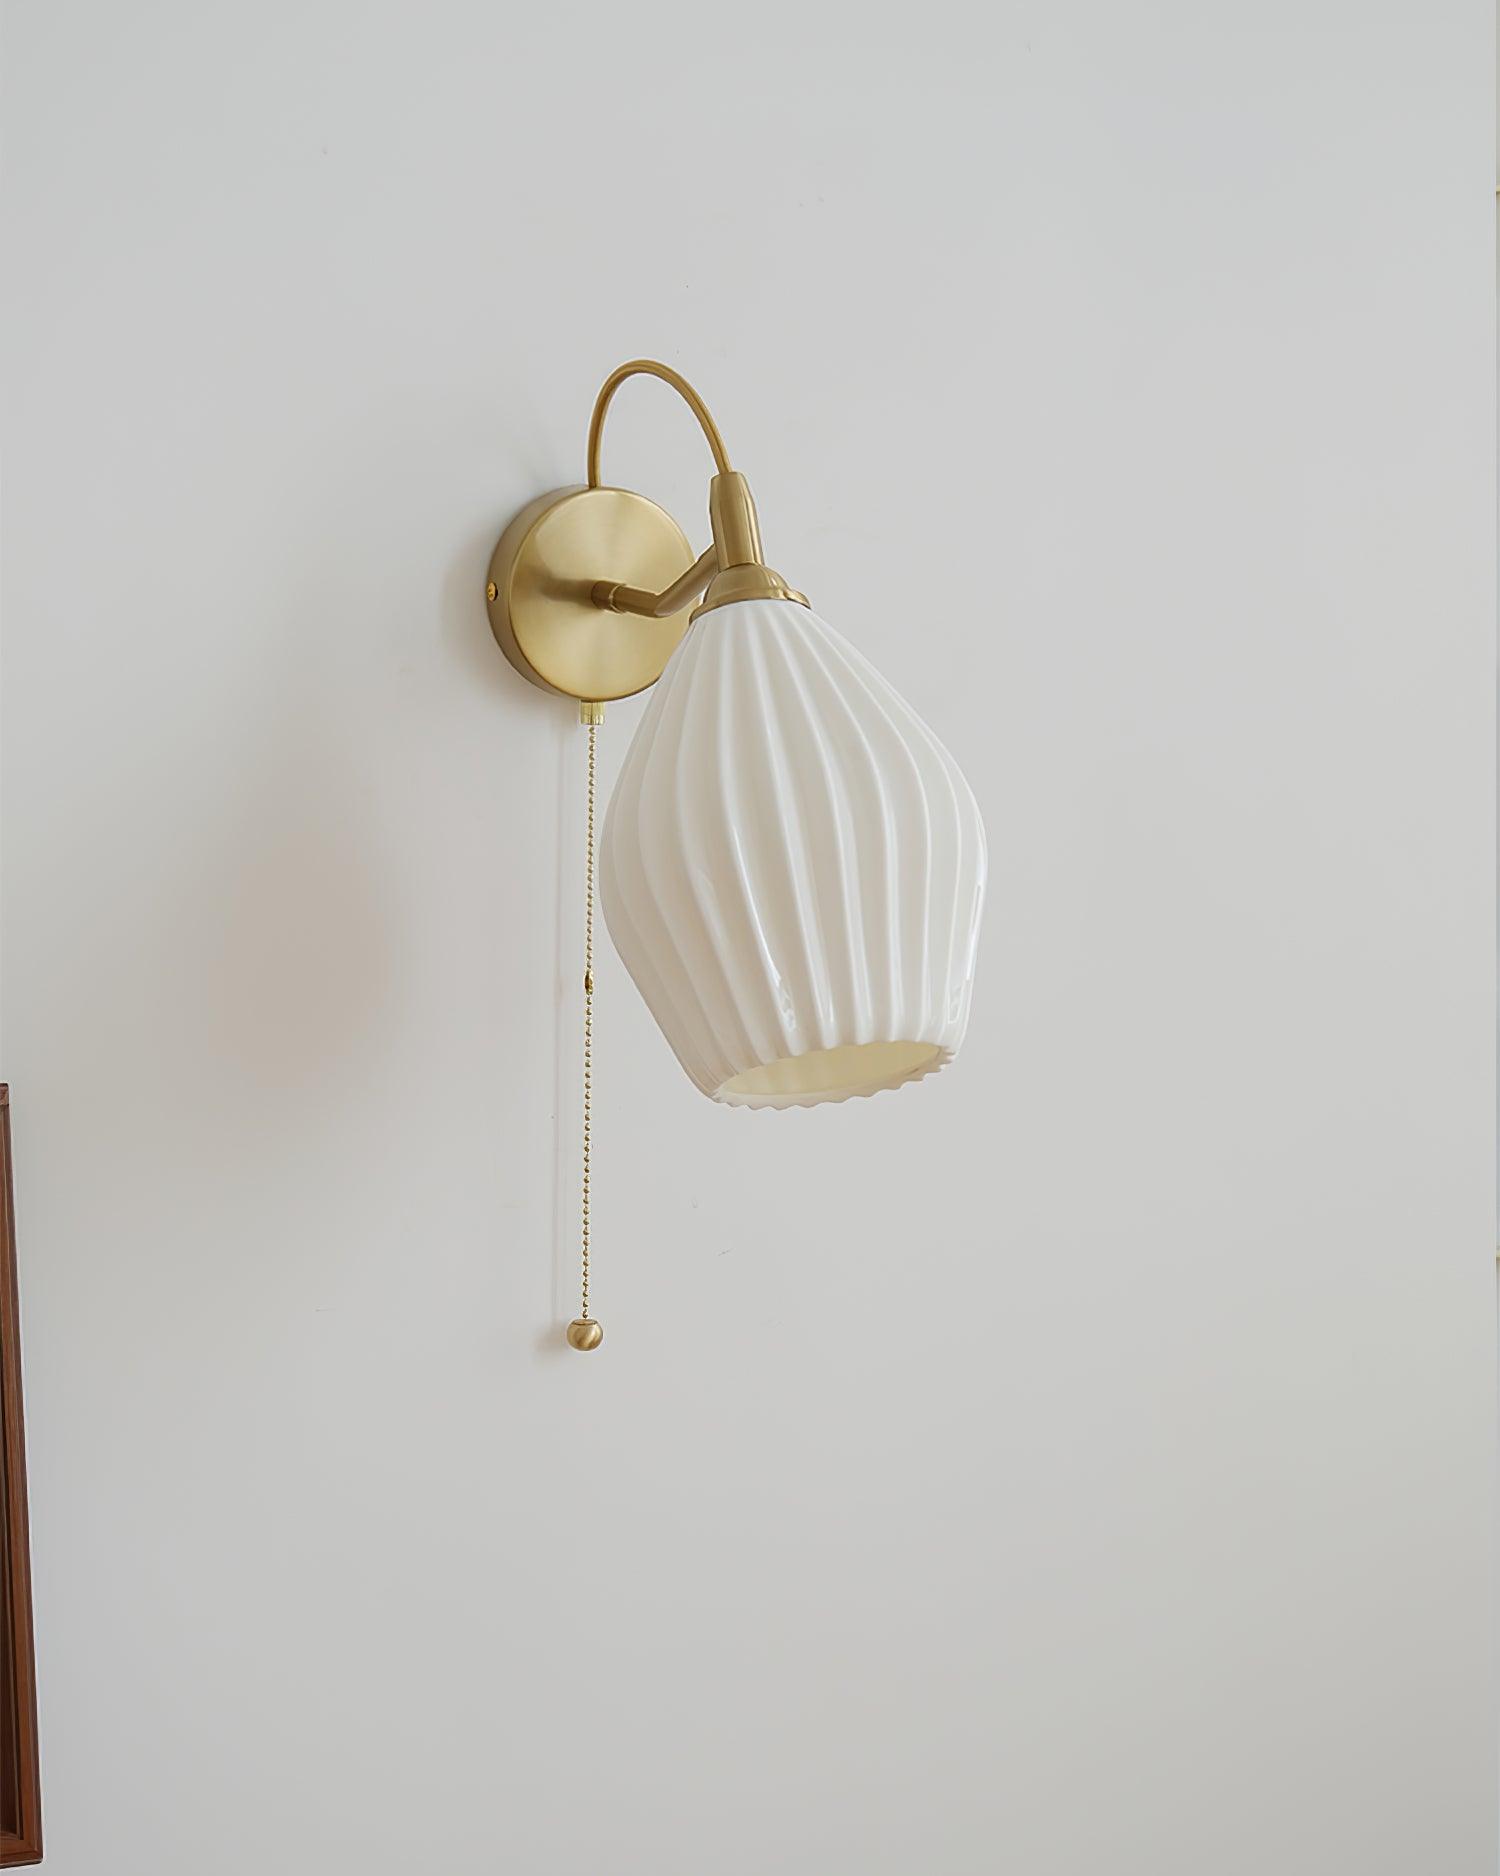 Paola Ceramic Wall Lamp - Docos